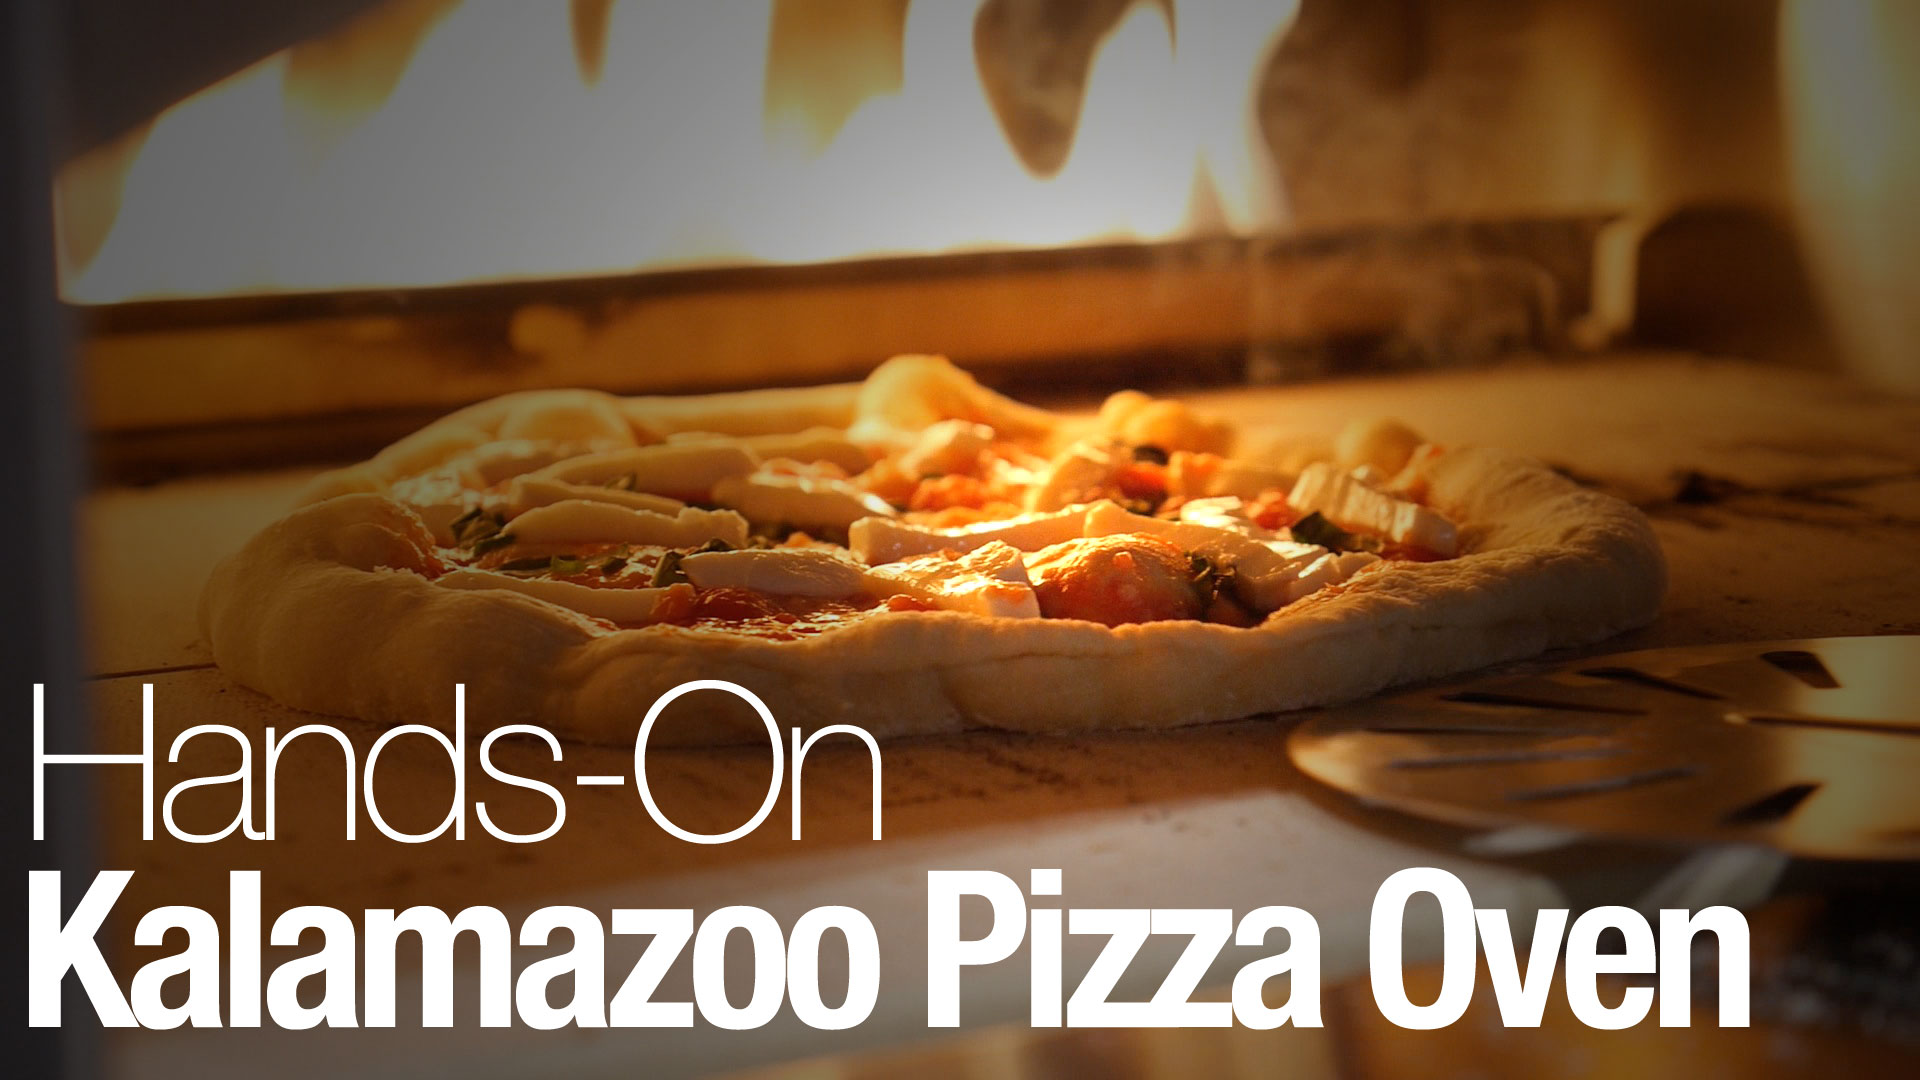 Geno S Golden Pizza Pub Reviews Deals Find Kalamazoo